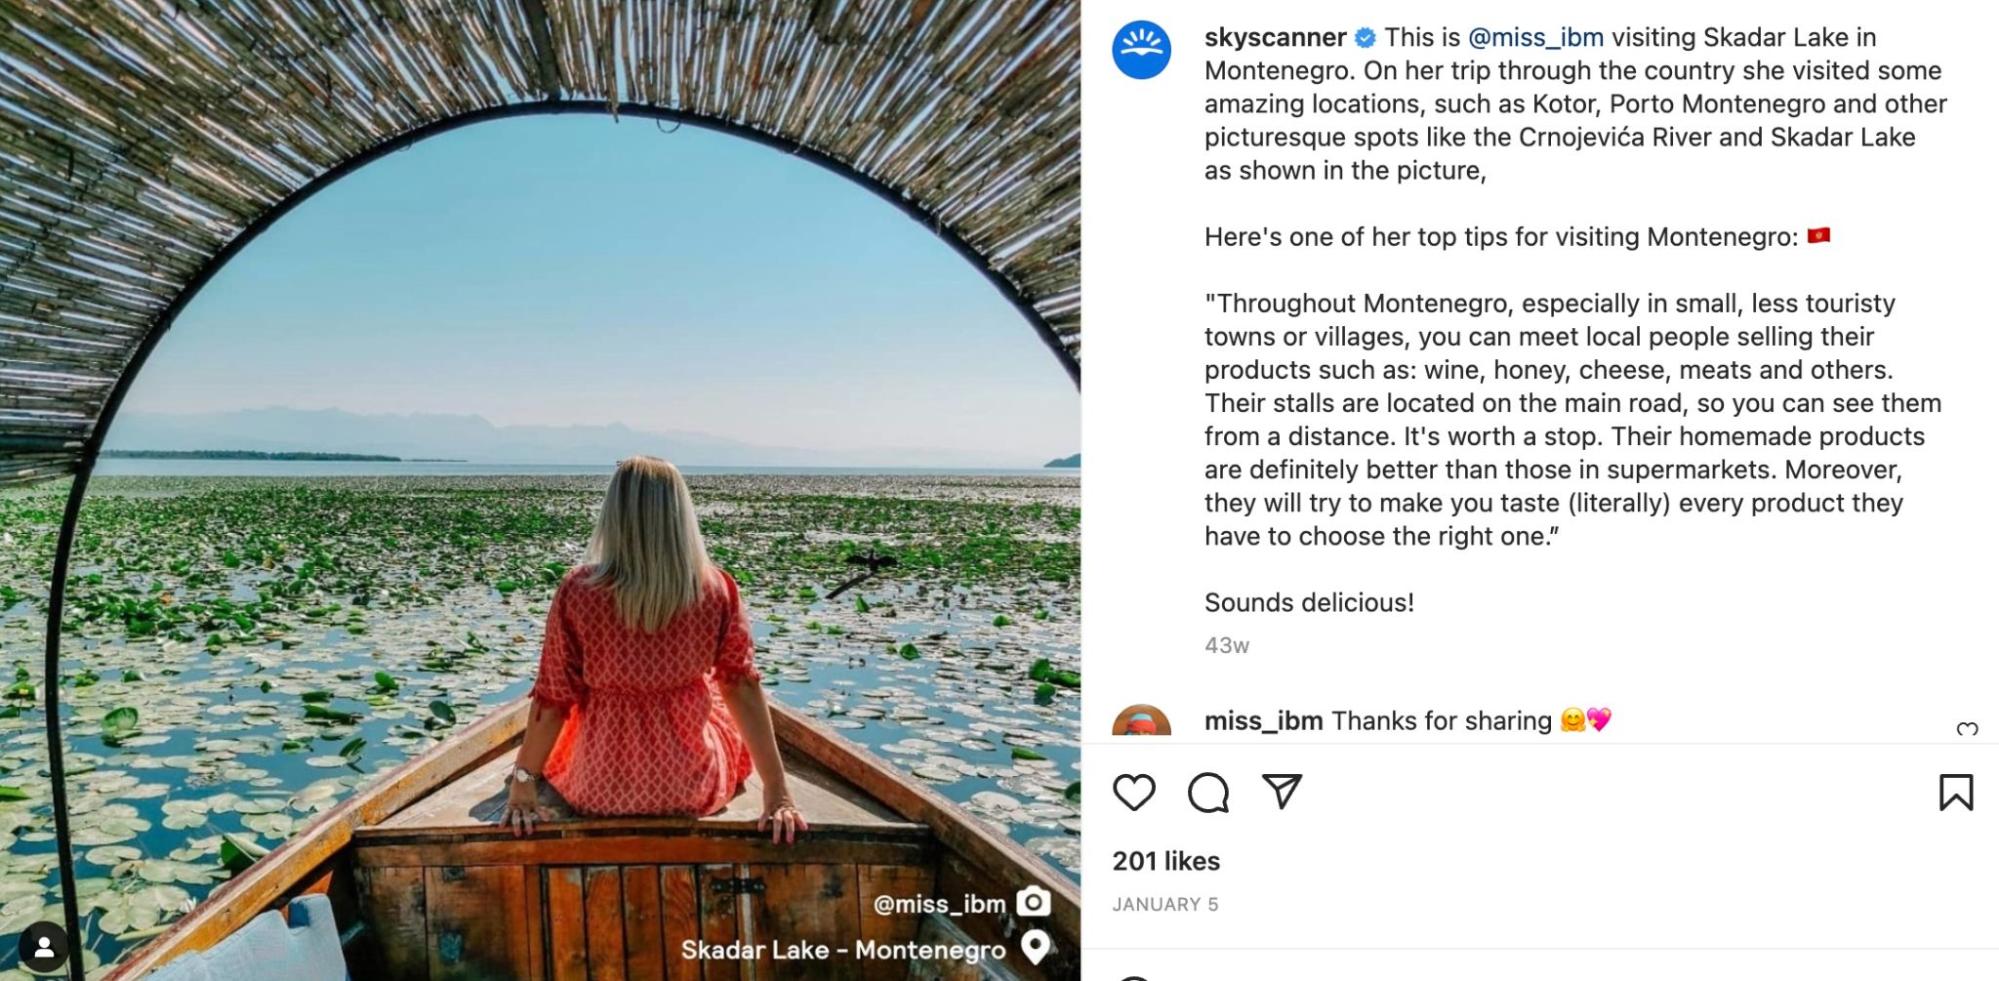 tangkapan layar postingan Instagram Skyscanner tentang seorang wanita duduk di perahu di Montenegro